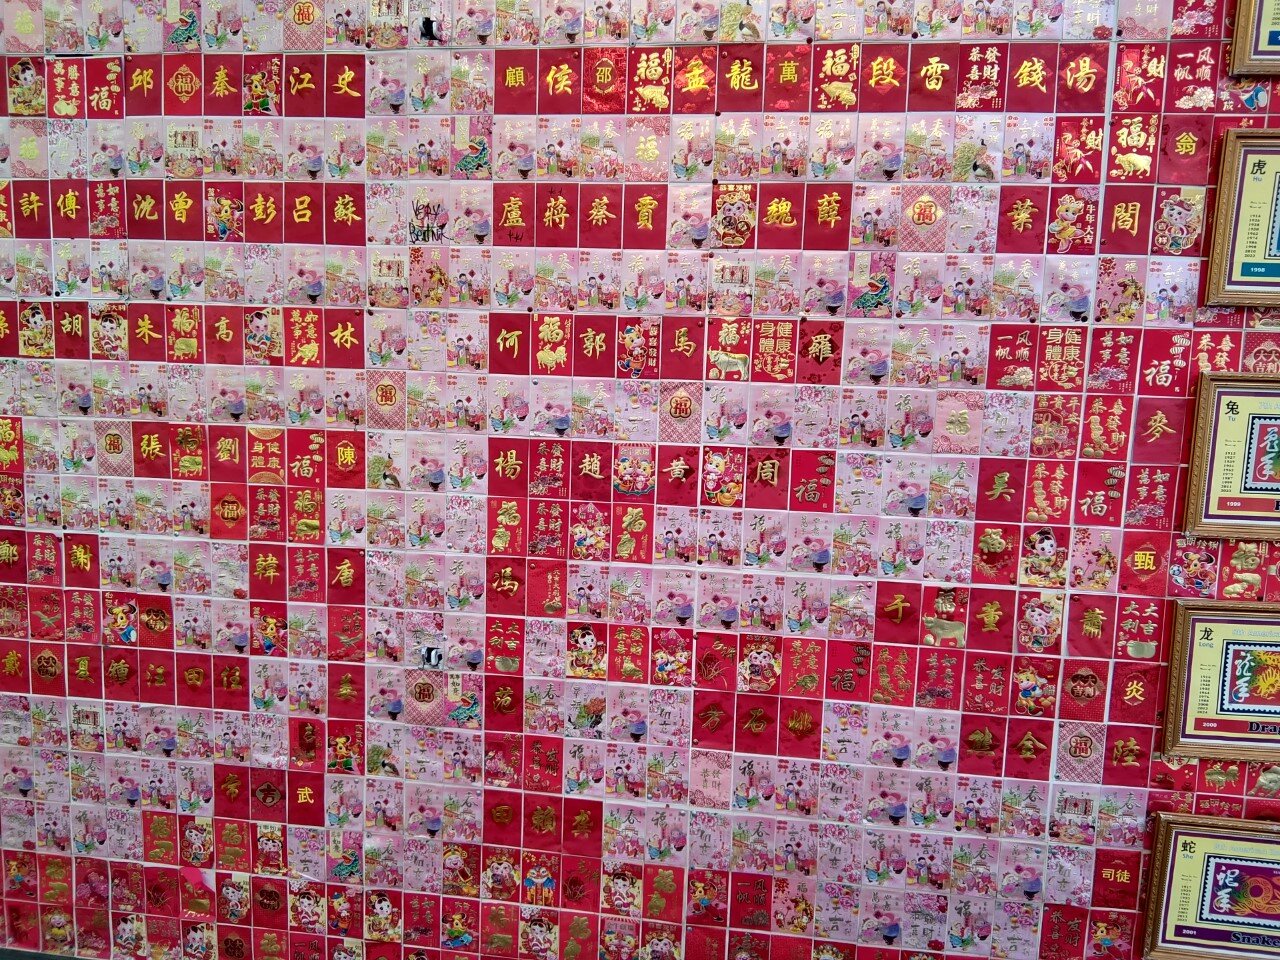 sf china tiled wall.jpg